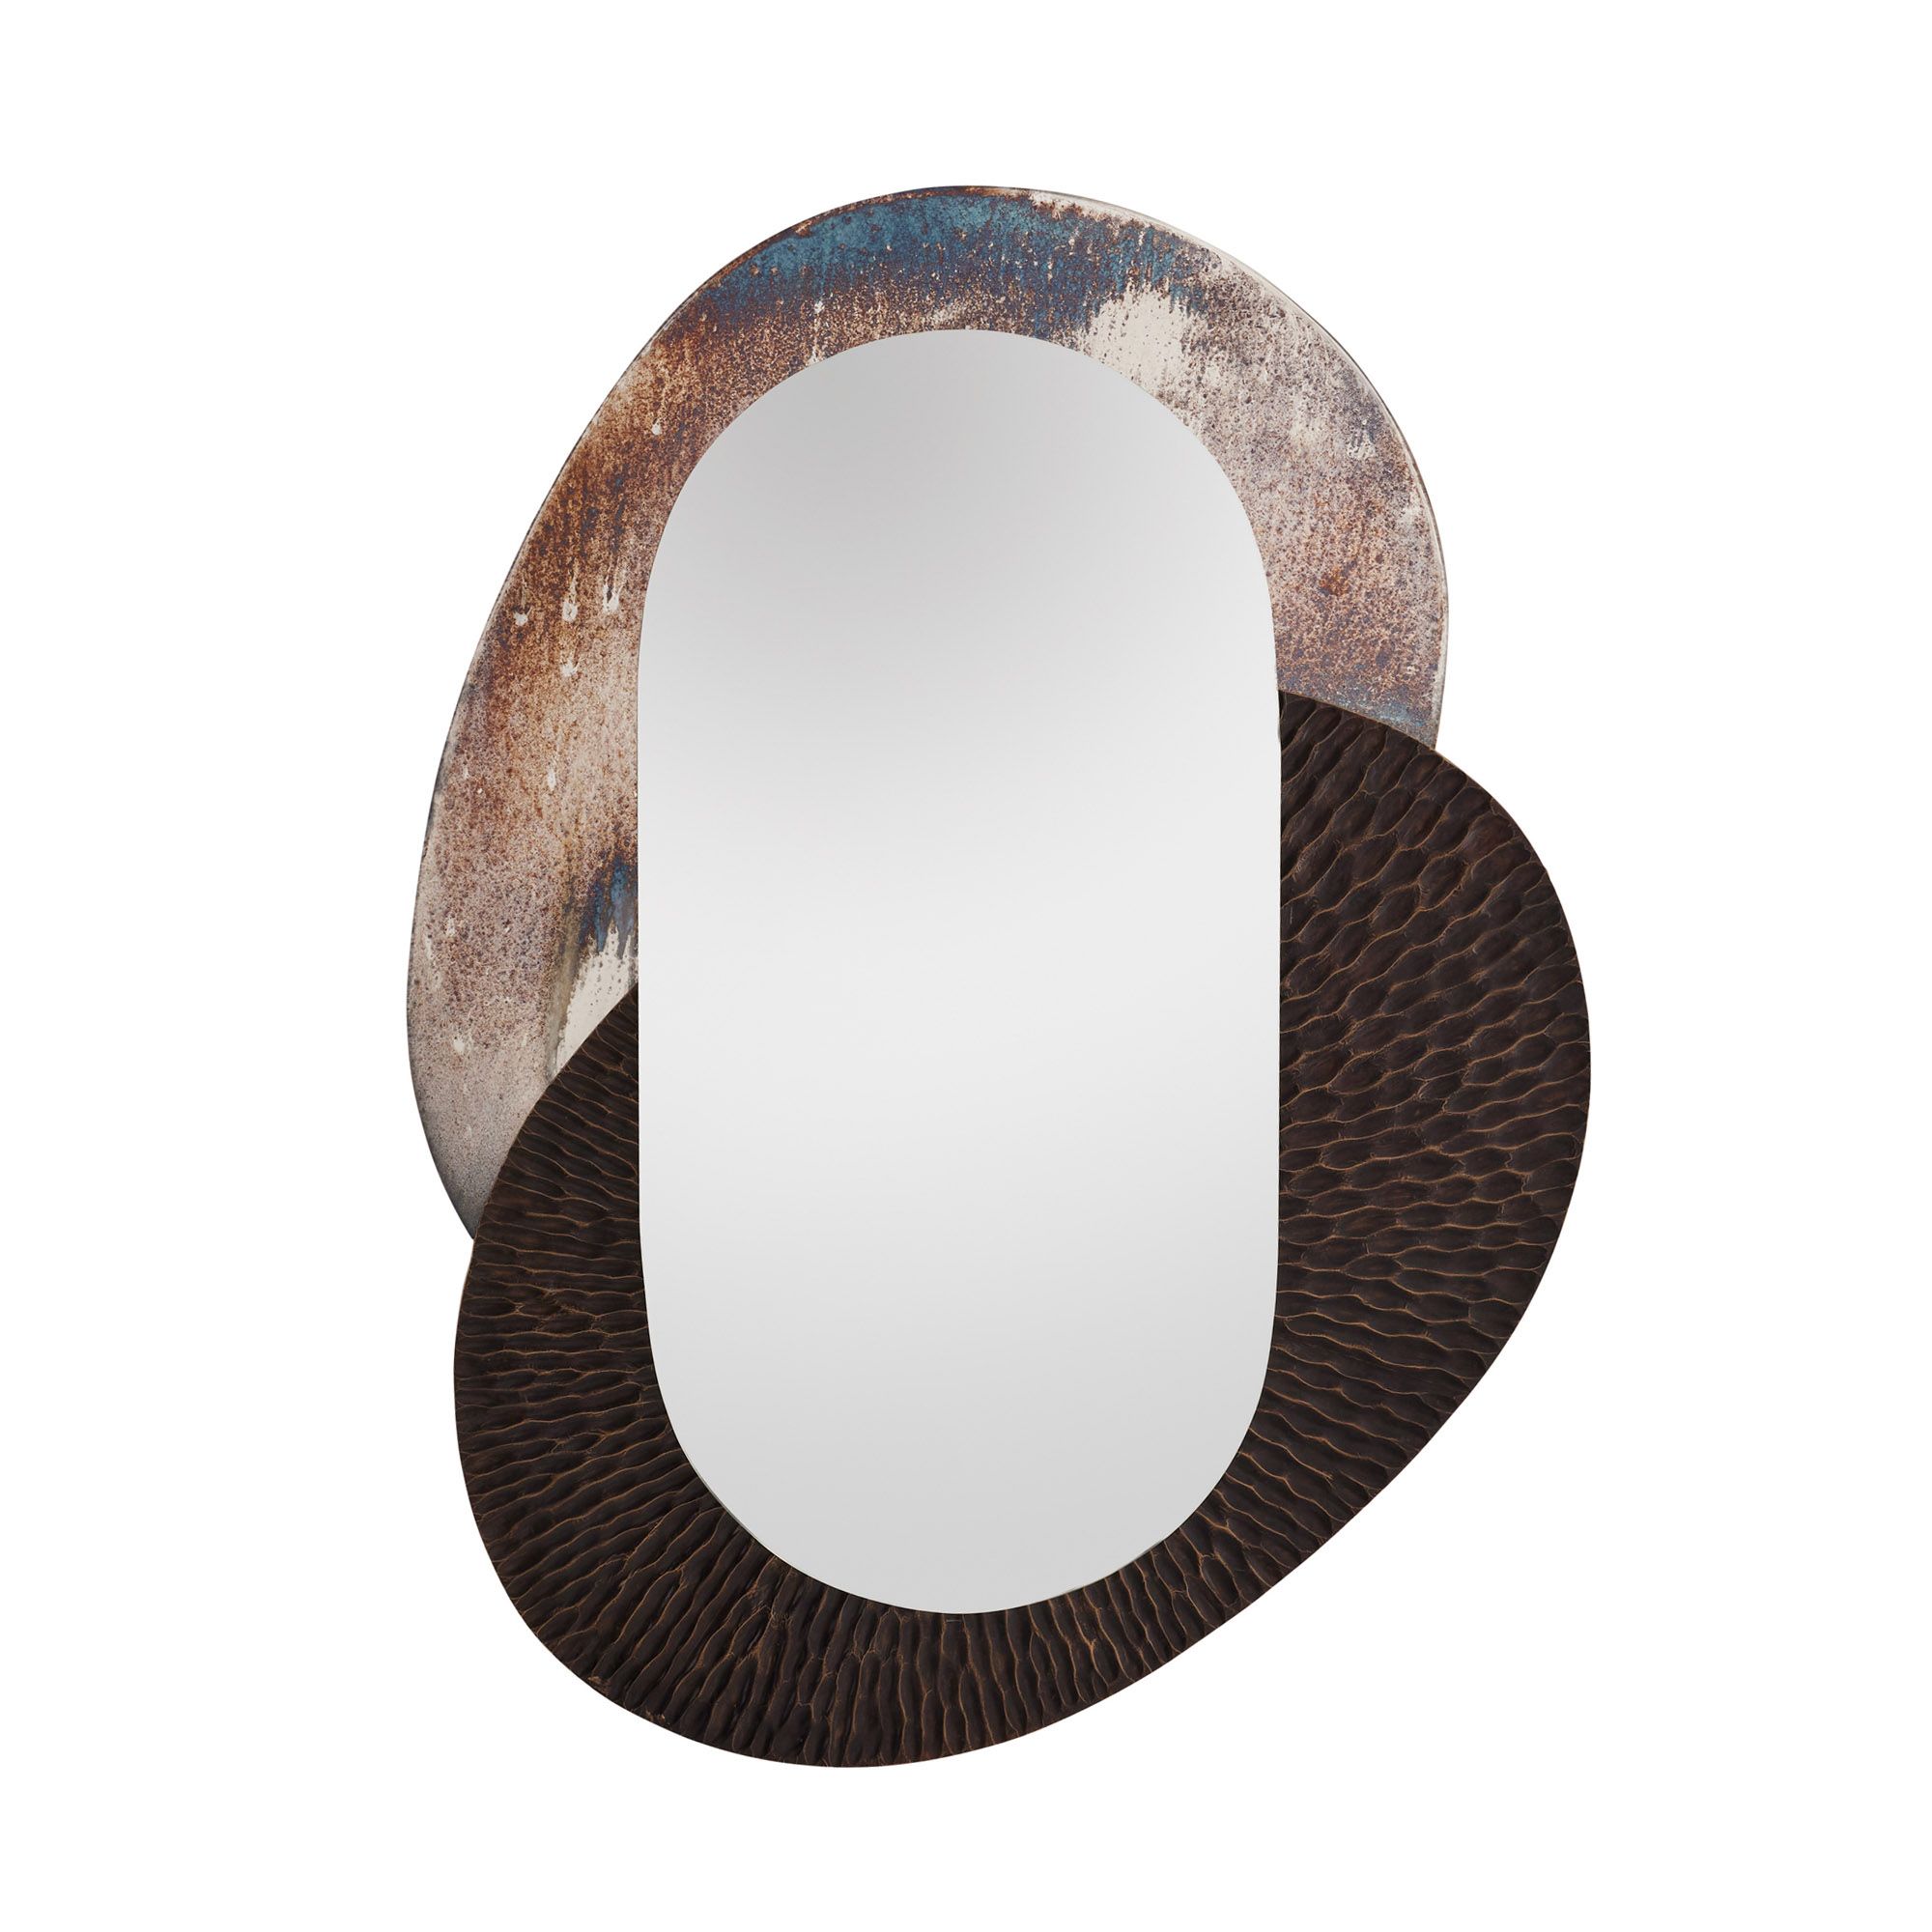 Купить Настенное зеркало Napoleon Mirror в интернет-магазине roooms.ru